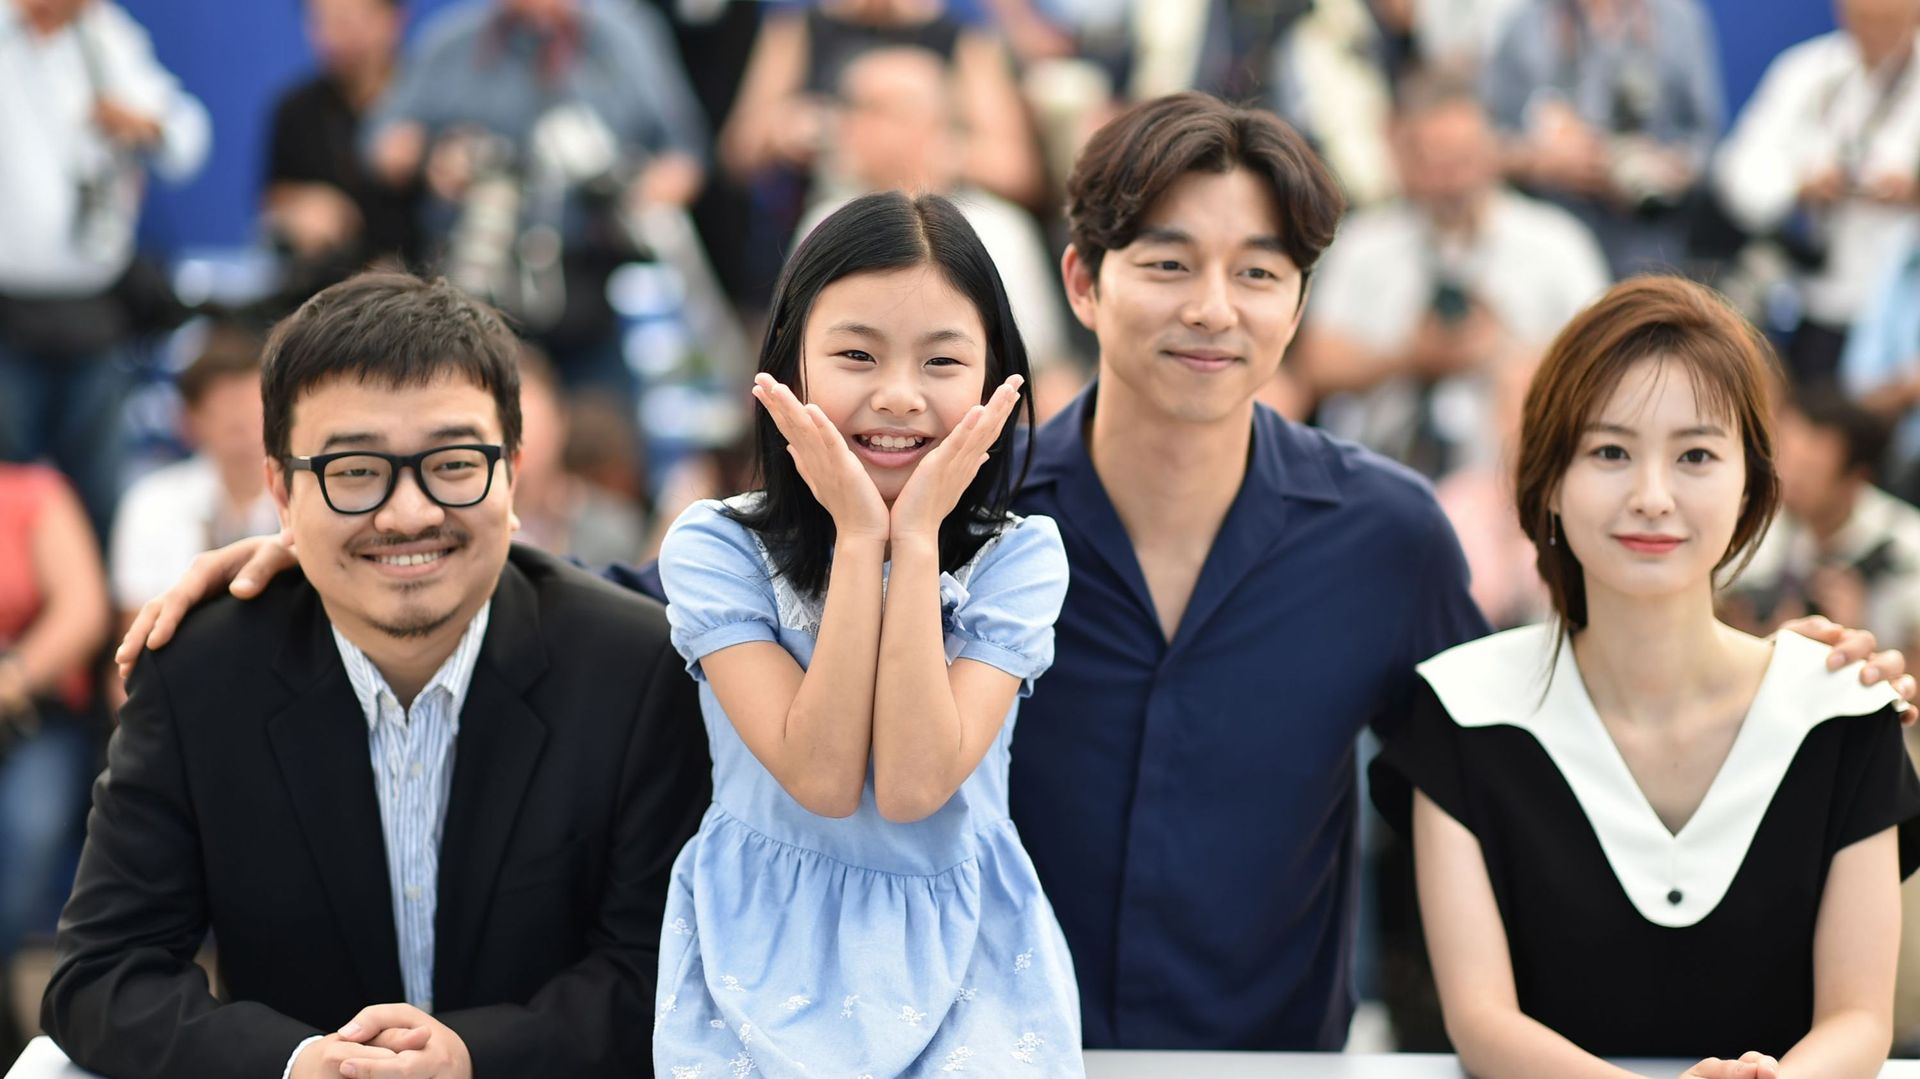 Le réalisateur Yeon Sang-Ho, l’actrice Kim Su-an, l’acteur Gong Yoo et l’actrice Jung Yu-mi posent le 14 mai 2016 lors d’un photocall pour le film "Dernier train pour Busan" au 69e Festival de Cannes.